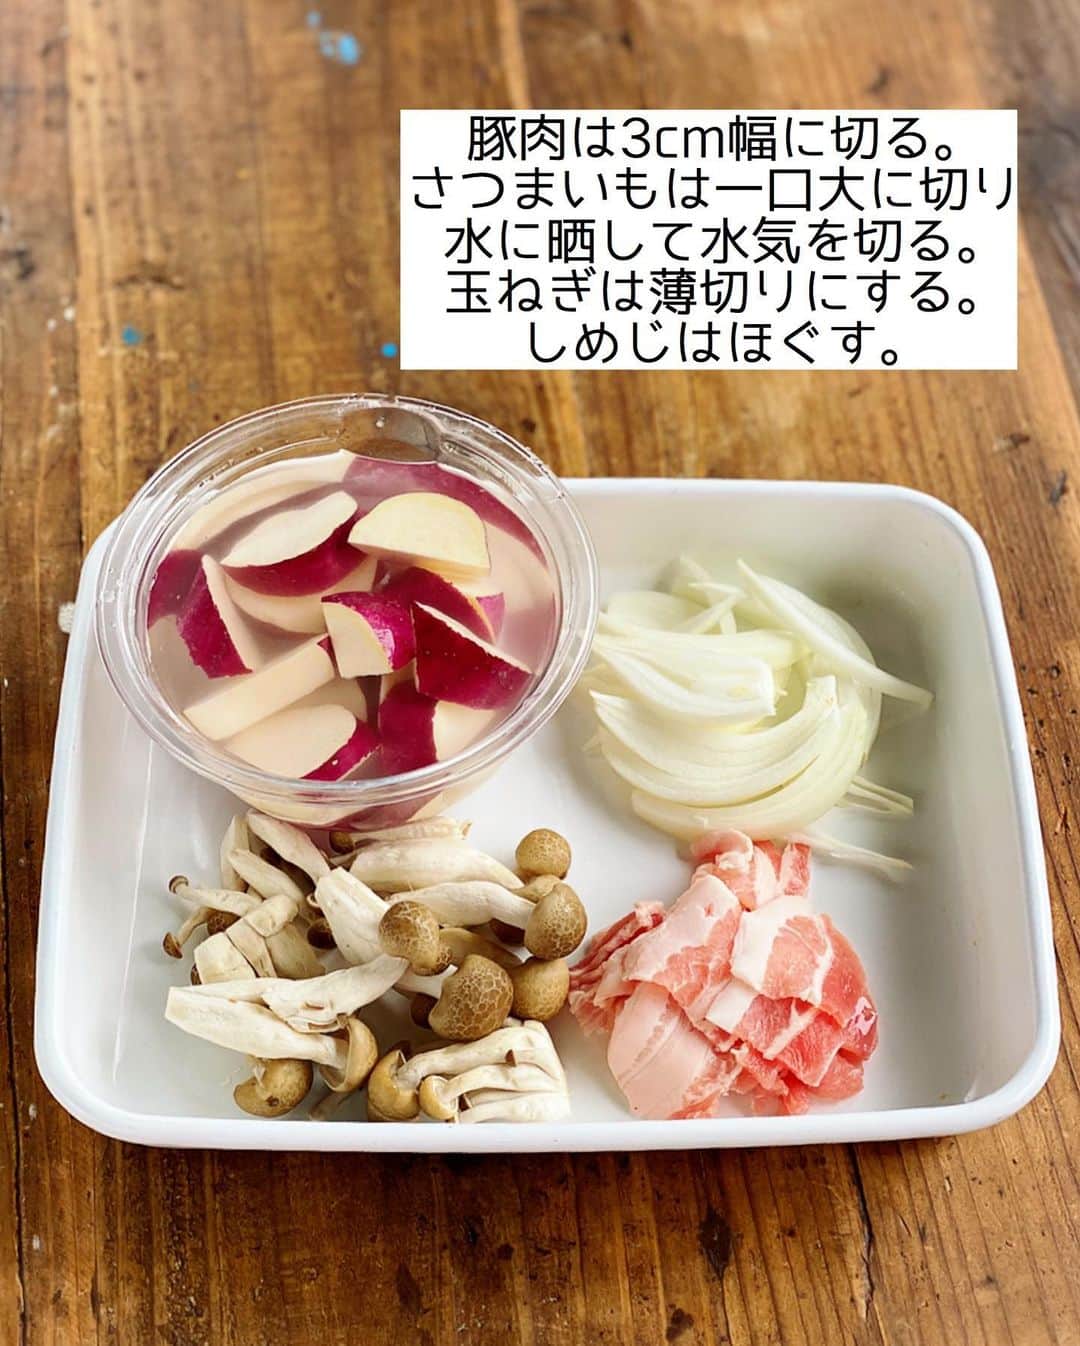 Mizuki【料理ブロガー・簡単レシピ】さんのインスタグラム写真 - (Mizuki【料理ブロガー・簡単レシピ】Instagram)「・﻿ 【#レシピ 】ーーーーー﻿ ♡さつまいもの豚汁♡﻿ ーーーーーーーーーーー﻿ ﻿ ﻿ ﻿ おはようございます(*^^*)﻿ ﻿ 今日ご紹介させていただくのは﻿ さつまいも入りの豚汁♡﻿ ほっこりと優しい甘さで﻿ 野菜がたっぷり食べられますよ♩﻿ しっかり食べ応えがあるので﻿ メインのボリュームが少ない時の﻿ 副菜メニューとしてもおすすめです♡﻿ ﻿ 作り方は超簡単(*´艸`)﻿ さっと炒めて10分煮るだけ！﻿ はじめにごま油で炒めることで﻿ コクと風味が格段にアップします♩﻿ ﻿ ﻿ ﻿ ＿＿＿＿＿＿＿＿＿＿＿＿＿＿＿＿＿＿＿＿﻿ 【2人分】﻿ 豚バラ薄切り肉...50g﻿ さつまいも...小1本(150g)﻿ 玉ねぎ...1/4個﻿ しめじ...1/3袋﻿ ごま油...小1﻿ ●水...400ml﻿ ●和風だし...小1/2﻿ 味噌...大1.5﻿ (好みで)万能ねぎ...適量﻿ ﻿ 1.豚肉は3cm幅に切る。さつまいもは一口大に切り、3分水に晒して水気を切る。玉ねぎは薄切りにする。しめじはほぐす。﻿ 2.鍋にごま油を中火で熱して1を炒める。豚肉の色が変わったら●を加えて10分煮る。﻿ 3.さつまいもが柔らかくなったら弱火にし、味噌を溶き入れる。器に盛り、小口切りにしたねぎをのせる。﻿ ￣￣￣￣￣￣￣￣￣￣￣￣￣￣￣￣￣￣￣￣﻿ ﻿ ﻿ ﻿ 《ポイント》﻿ ♦︎アクが出たら除いて下さい♩﻿ ♦︎野菜はお好みでアレンジして下さいね♩﻿ ﻿ ﻿ ﻿ ﻿ ﻿ ﻿ 🔖献立本をご予約下さった方へ🔖﻿ ￣￣￣￣￣￣￣￣￣￣￣￣￣￣￣￣﻿ いつも本当にありがとうございます🙇‍♀️﻿ この本の発売日は9月24日ですが﻿ 連休の関係で早めに出荷され﻿ 発売日より前のお届けとなるところもございます💕﻿ (普通逆ですよね😂)﻿ ↓﻿ ↓﻿ _____________________________________﻿ 💓新刊予約開始しました💓﻿ Amazon予約キャンペーン実施中🎁﻿ ￣￣￣￣￣￣￣￣￣￣￣￣￣￣￣￣￣﻿ \15分でいただきます/﻿ #Mizukiの2品献立﻿ (9月24日発売・マガジンハウス)﻿ ﻿ 忙しい私たちには﻿ 2品くらいがちょうどいい！﻿ 『しんどくない献立、考えました』﻿ ￣￣￣￣￣￣￣￣￣￣￣￣￣￣￣￣﻿ ﻿ ーーーーーPART.1 ーーーーー﻿ 【Mizukiのお墨つき！２品献立ベスト10】﻿ 約15分でできる10献立をご紹介！﻿ メインは全部フライパン、副菜はレンチンor混ぜるだけ♡﻿ ﻿ ーーーーーPART.2 ーーーーー﻿ 【フライパンひとつ！今夜のメインおかず】﻿ 献立の主役になる肉や魚のおかず50品！﻿ Part3の副菜と組み合わせれば﻿ 献立のバリエーションが広がりますよ♩﻿ ﻿ ーーーーー PART.3 ーーーーー﻿ 【合間に作れる！ 野菜別かんたん副菜】﻿ レンチンor和えるだけの副菜レシピを﻿ 素材別にたっぷり収録♩﻿ ﻿ ーーーーー番外編ーーーーー﻿ 【ひとつで満足！ご飯＆麺】﻿ 【具だくさん！おかずスープ】﻿ 【オーブンいらずのおやつレシピ】﻿ ￣￣￣￣￣￣￣￣￣￣￣￣￣￣￣￣￣￣﻿ ﻿ ﻿ ﻿ Amazon予約プレゼントキャンペーン﻿ 🎁🎁🎁🎁🎁🎁🎁🎁🎁🎁🎁🎁﻿ ﻿ 皆様に感謝の気持ちを込めて﻿ ご用意させていただきました✨﻿ ﻿ ＿＿＿＿＿＿＿＿＿＿＿＿＿＿＿＿＿﻿ 新刊【2品献立】をAmazonで予約し﻿ インスタにアップして下さった方に﻿ 抽選で［フライパン］or［ボールセット］を﻿ プレゼントさせていただきます♩﻿ ￣￣￣￣￣￣￣￣￣￣￣￣￣￣￣￣￣﻿ ﻿ ✅【インスタ応募方法▼】﻿ ①本の表紙の画像を1枚目に、﻿ Amazonで予約したことがわかる画像を﻿ 2枚目に貼り付け(どちらもスクショでOK)﻿ ［#Mizukiの2品献立 ］のハッシュタグを付けて投稿！﻿ 以上で応募完了です(*^^*)﻿ ﻿ ￣￣￣￣￣￣￣￣￣￣￣￣￣￣￣￣￣￣﻿ ハイライトにリンク🔗あります💓﻿ ﻿ ﻿ ﻿ ﻿ ﻿ ﻿ ￣￣￣￣￣￣￣￣￣￣￣￣￣￣￣￣￣￣﻿ レシピを作って下さった際や﻿ レシピ本についてのご投稿には﻿ タグ付け( @mizuki_31cafe )して﻿ お知らせいただけると嬉しいです😊💕﻿ ﻿ ﻿ ﻿ ﻿ ﻿ #さつまいも#豚汁#汁物#Mizuki#簡単レシピ#時短レシピ#節約レシピ#料理#フーディーテーブル#マカロニメイト#おうちごはん#デリスタグラマー#料理好きな人と繋がりたい#食べ物#料理記録#おうちごはんlover#写真好きな人と繋がりたい#foodpic#cooking#recipe#lin_stagrammer#foodporn#yummy#f52grams#さつまいもの豚汁m」9月21日 6時58分 - mizuki_31cafe